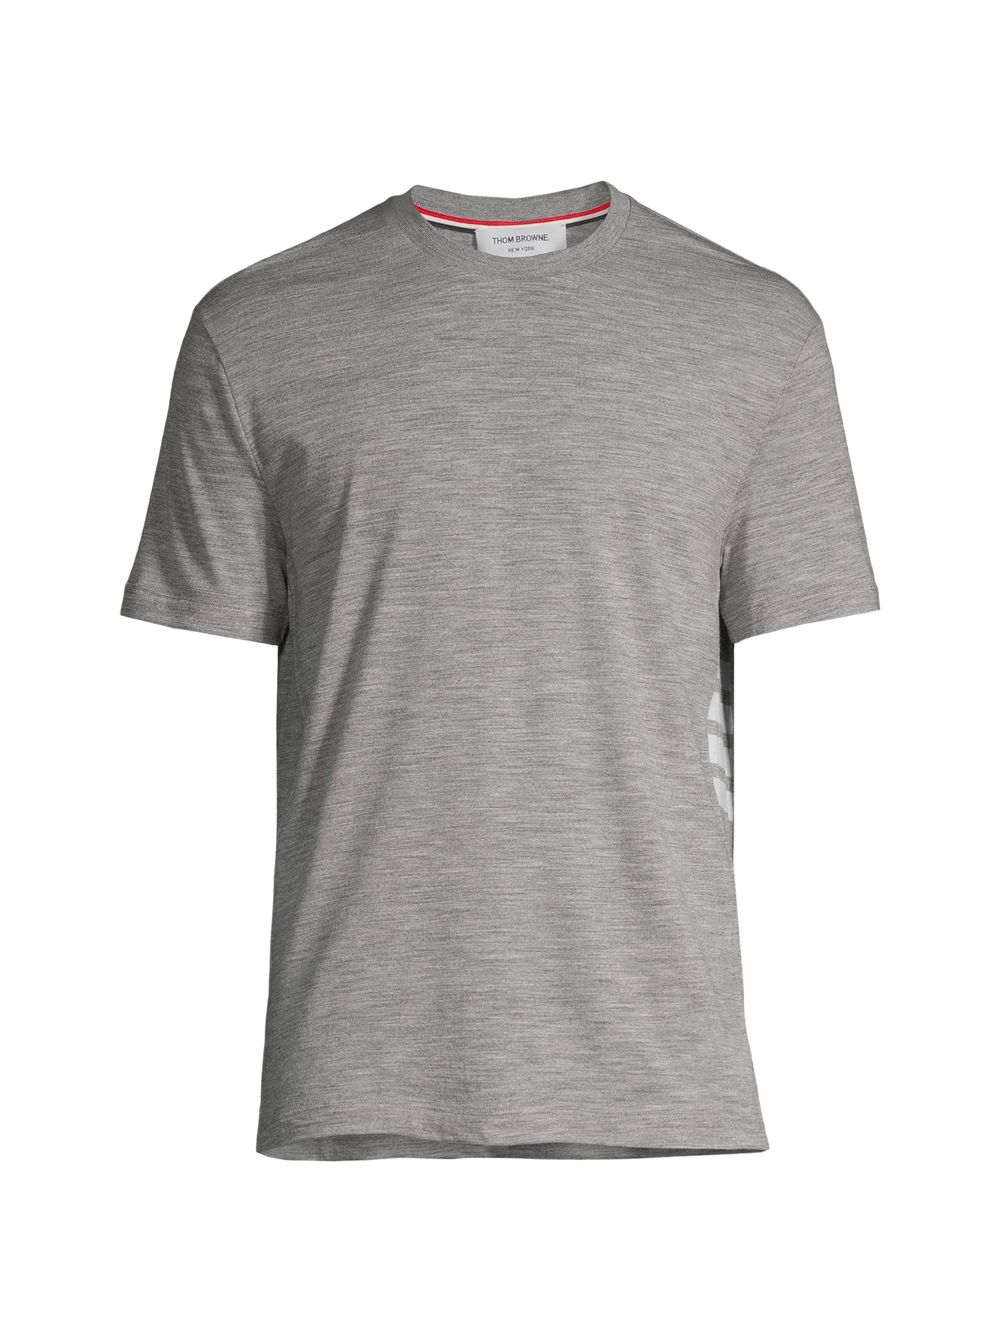 Шерстяная футболка с полосками 4 Thom Browne, серый шерстяной свитер поло с 4 полосками thom browne серый